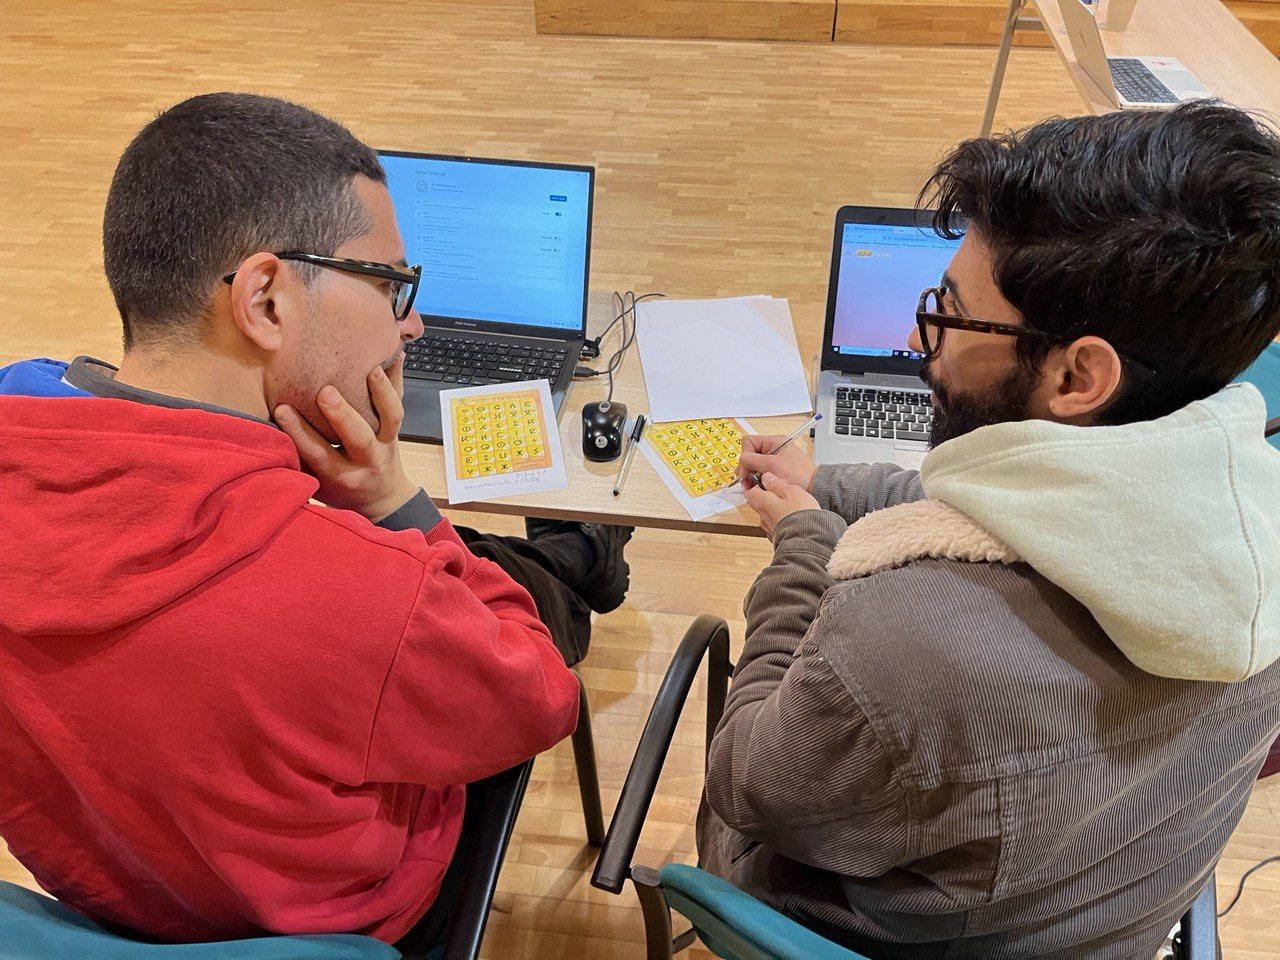 Dos col·laboradors discuteixen a la datathon d'Awal sobre diferents guions de Tamazight